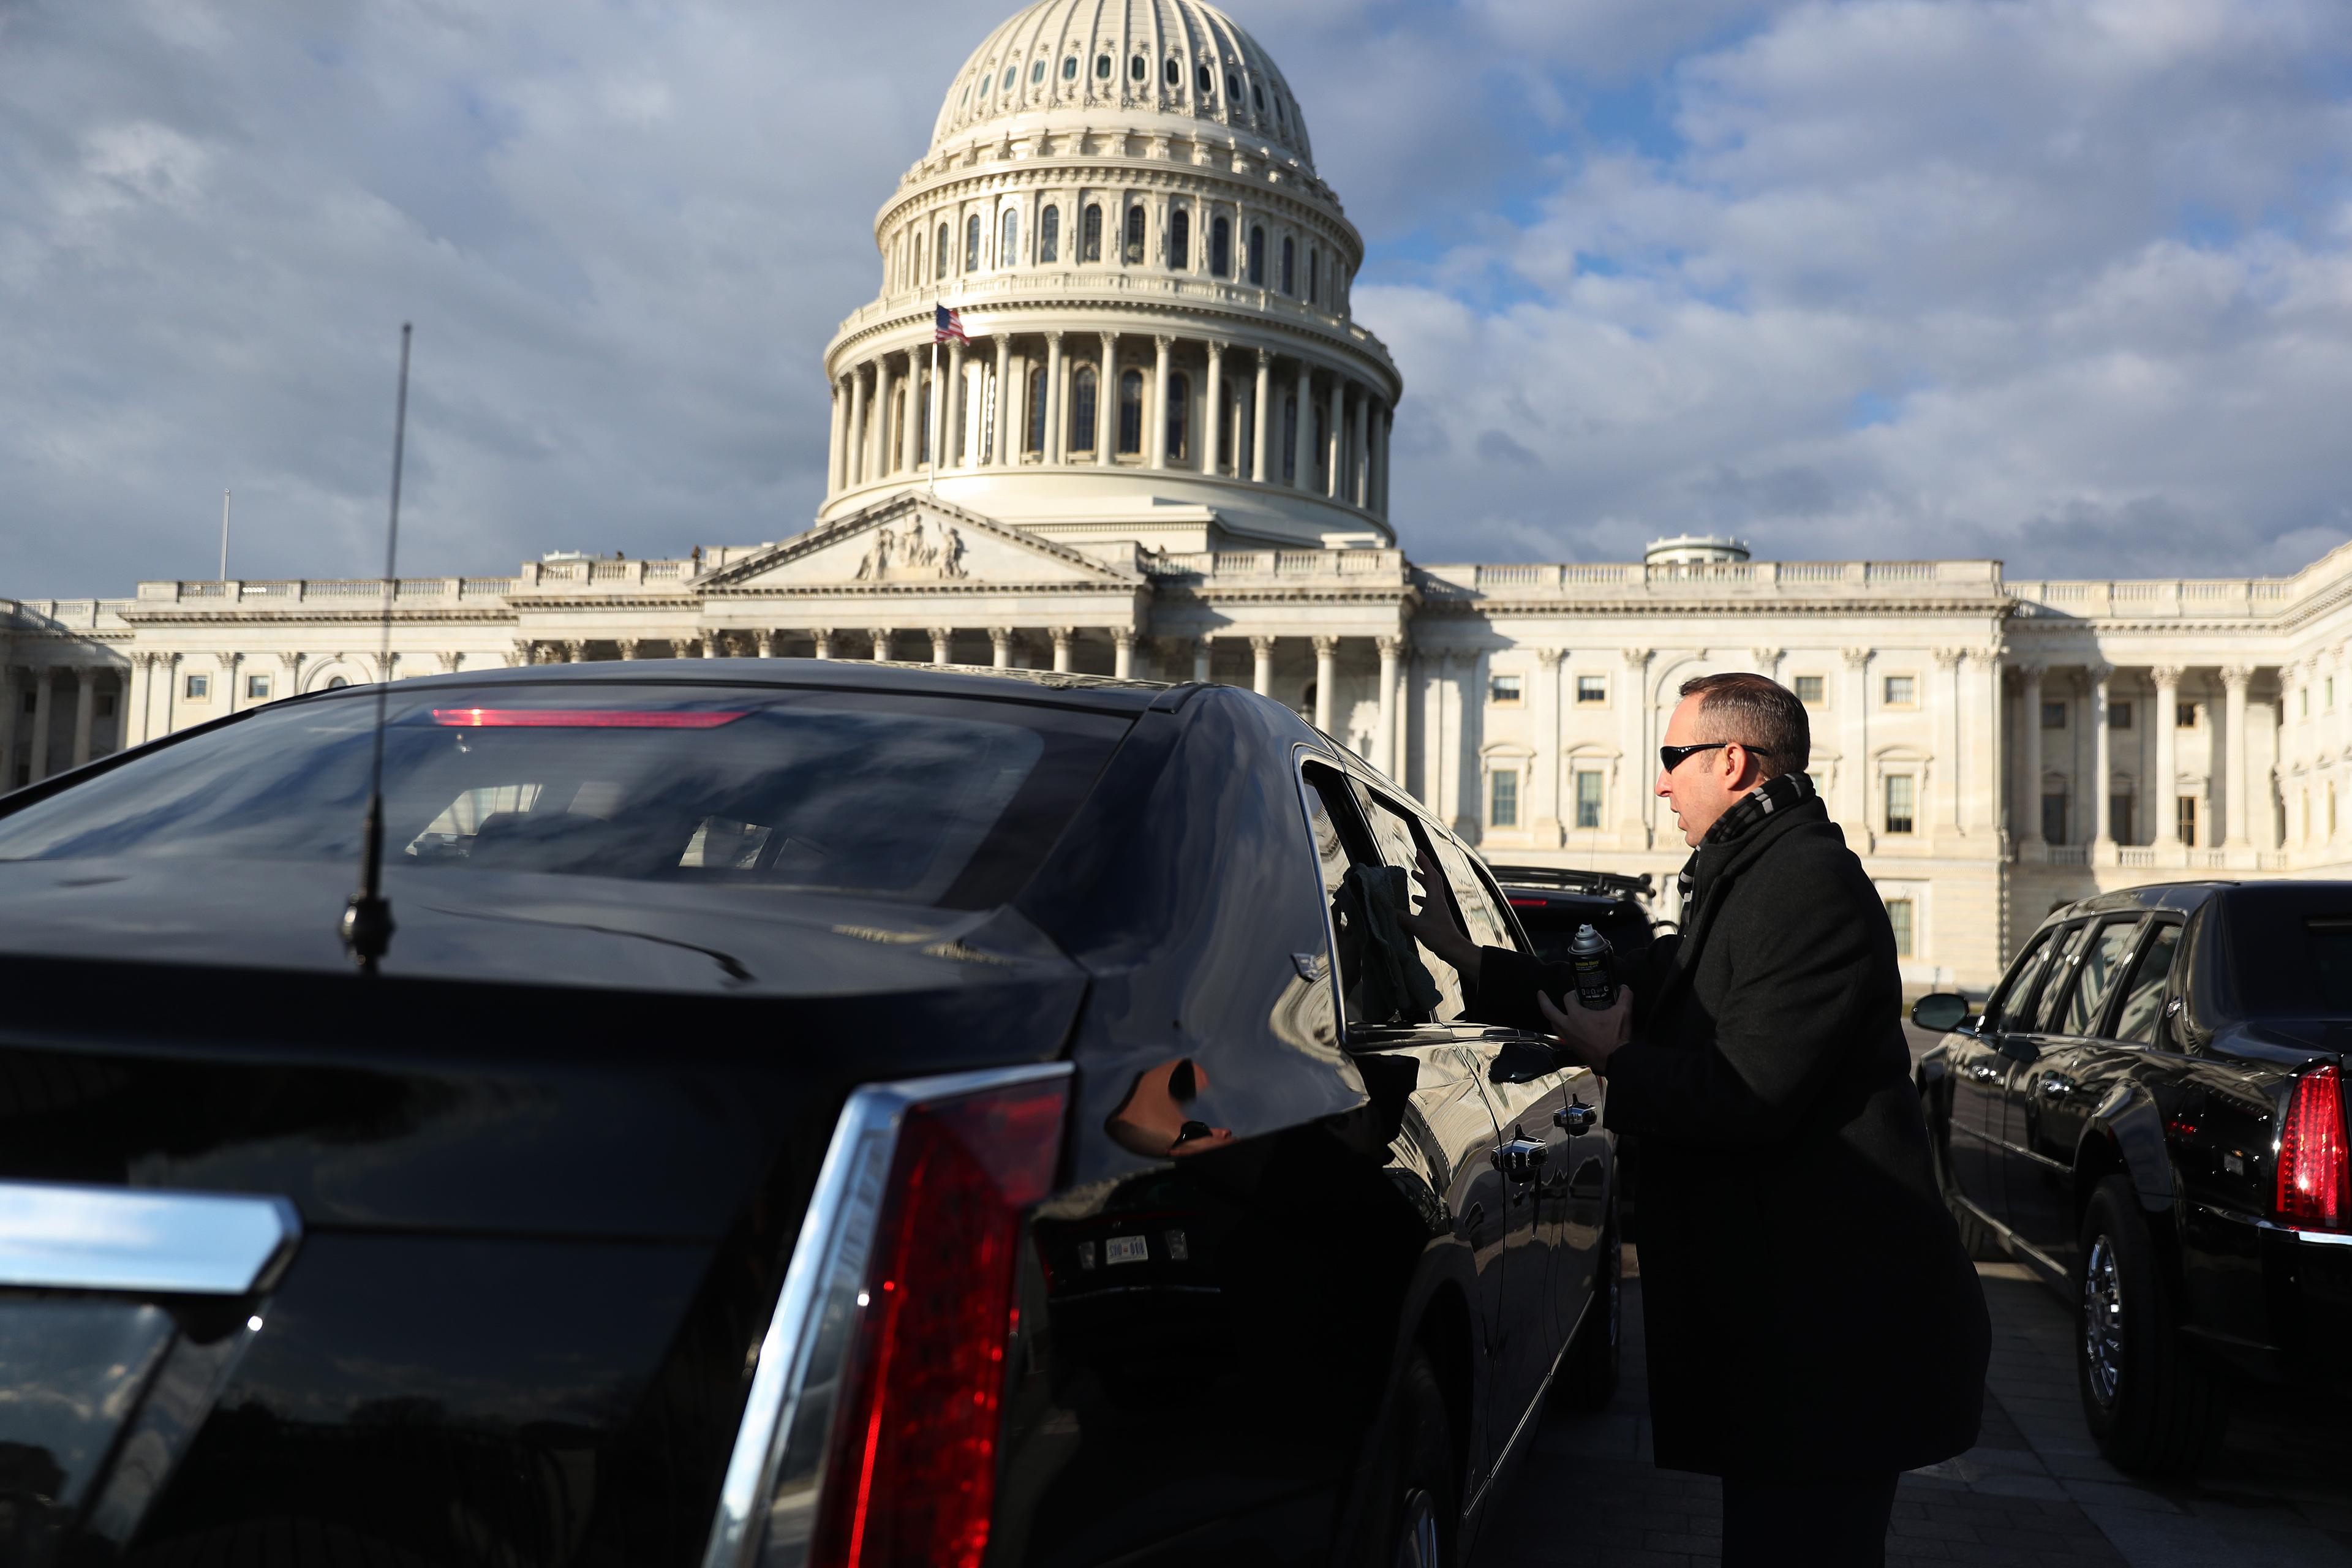 Ispred Kapitola se "šminka" predsjednička limuzina za Džoa Bajdena